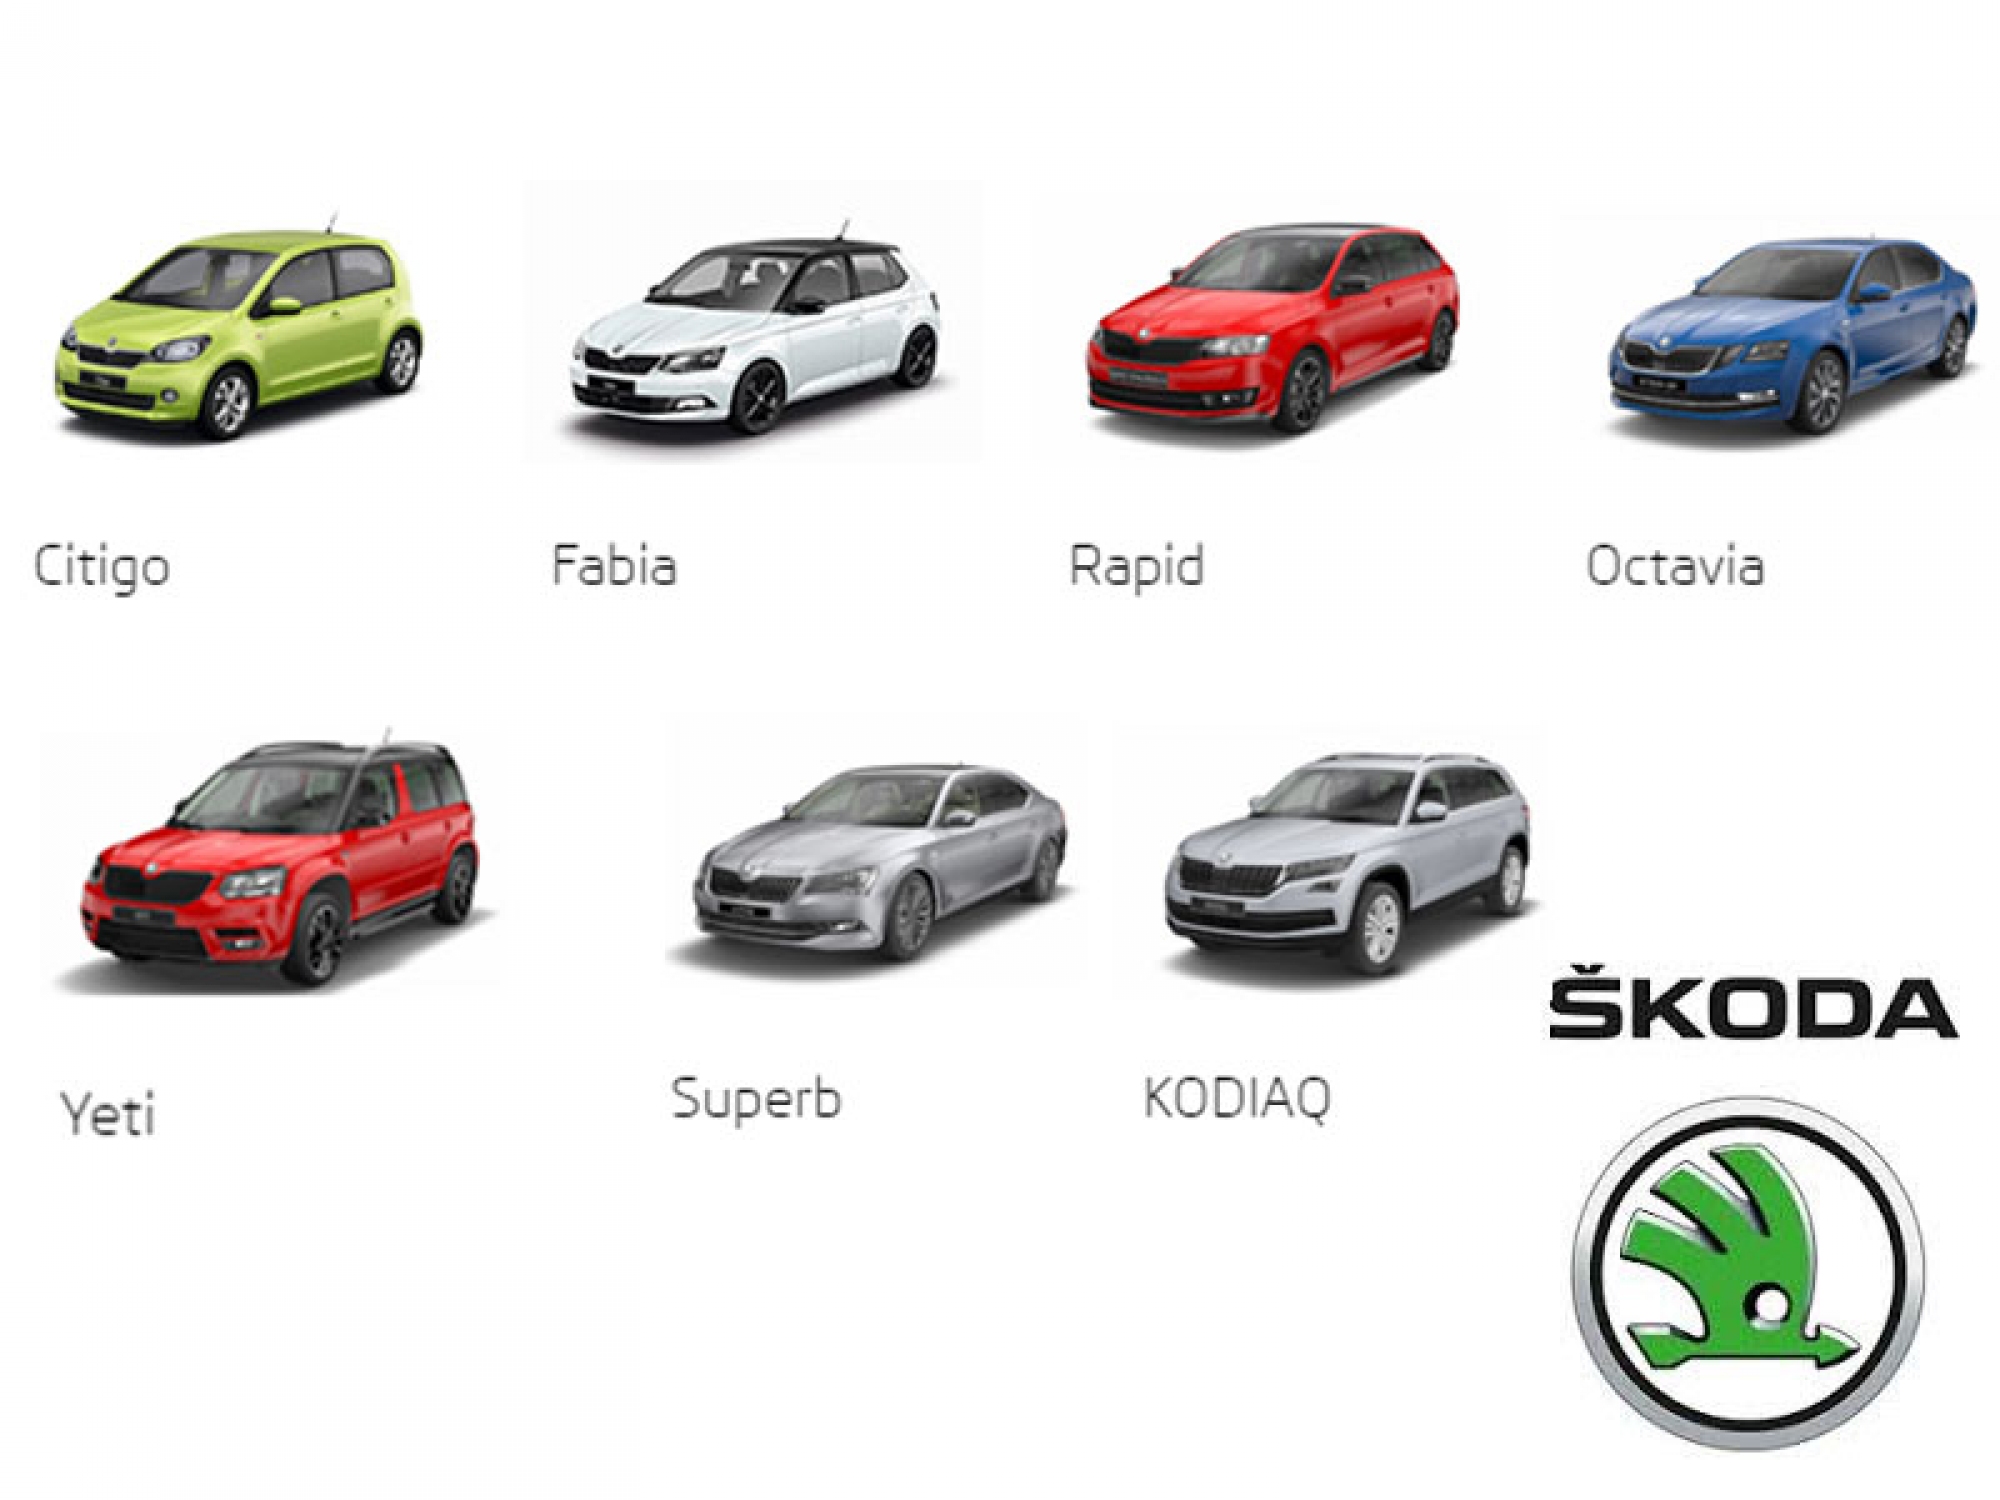 Découvrez la gamme Skoda : pratique, élégante et performante